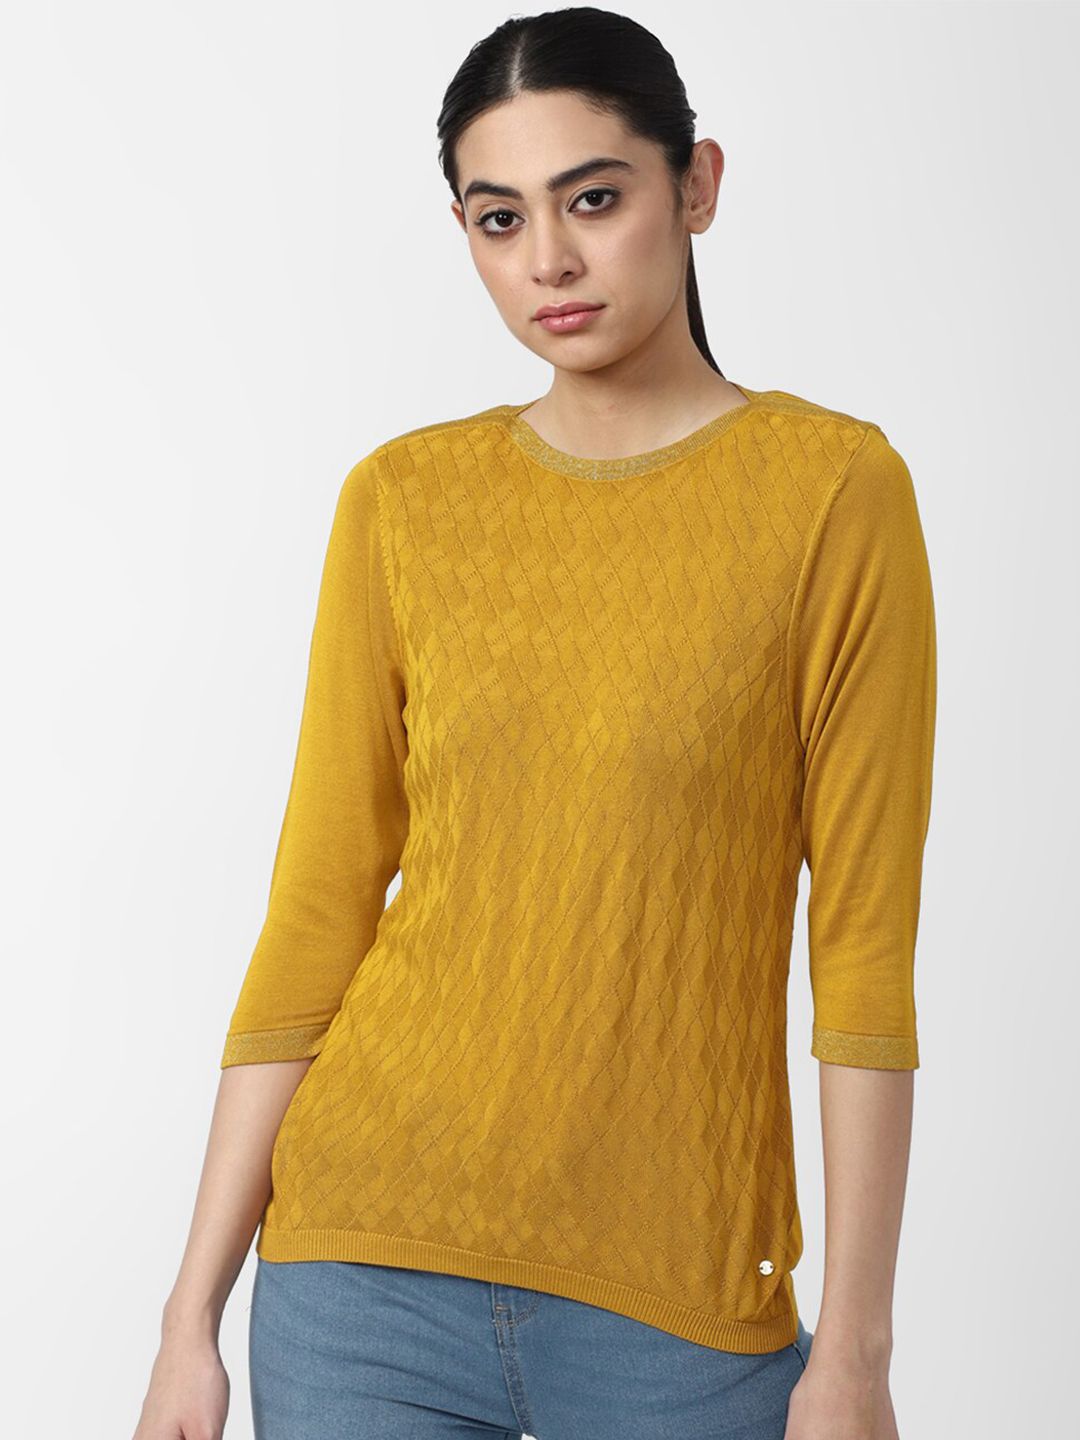 Van Heusen Woman Yellow Self-Design Top Price in India